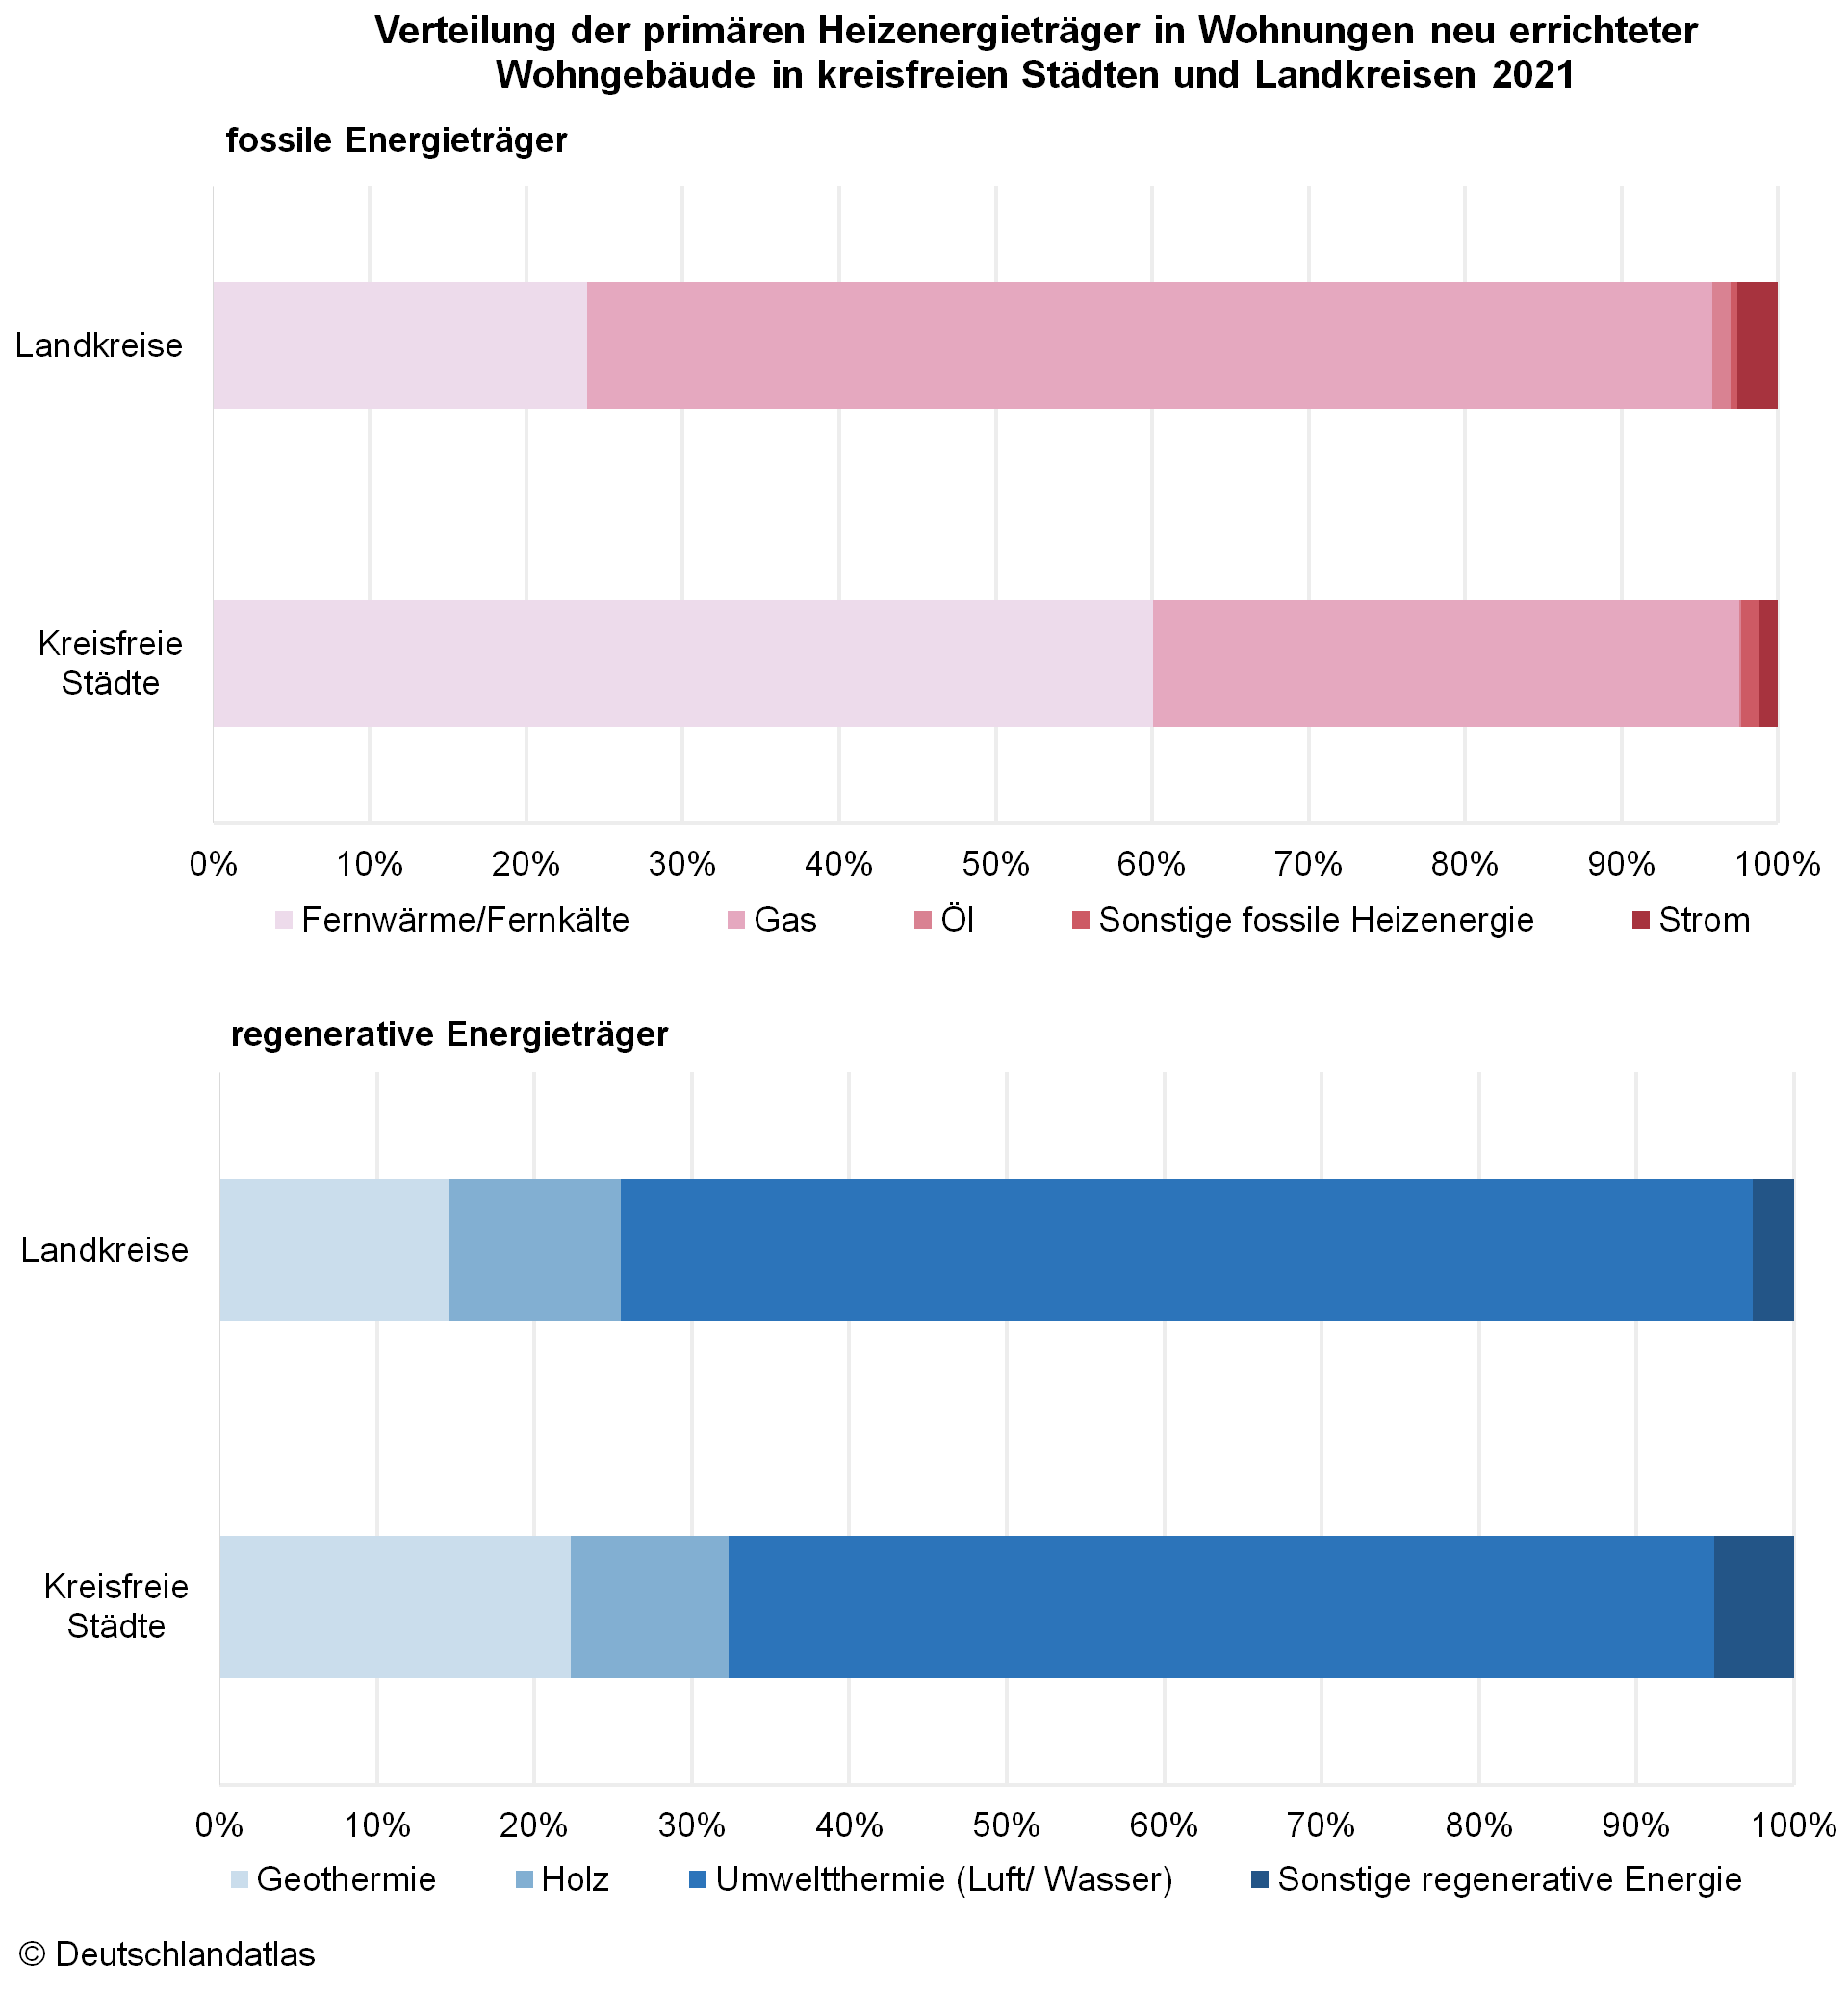 Verteilung der primären Heizenergieträger in Wohnungen neuer Wohngebäude in Städten und Landkreisen.